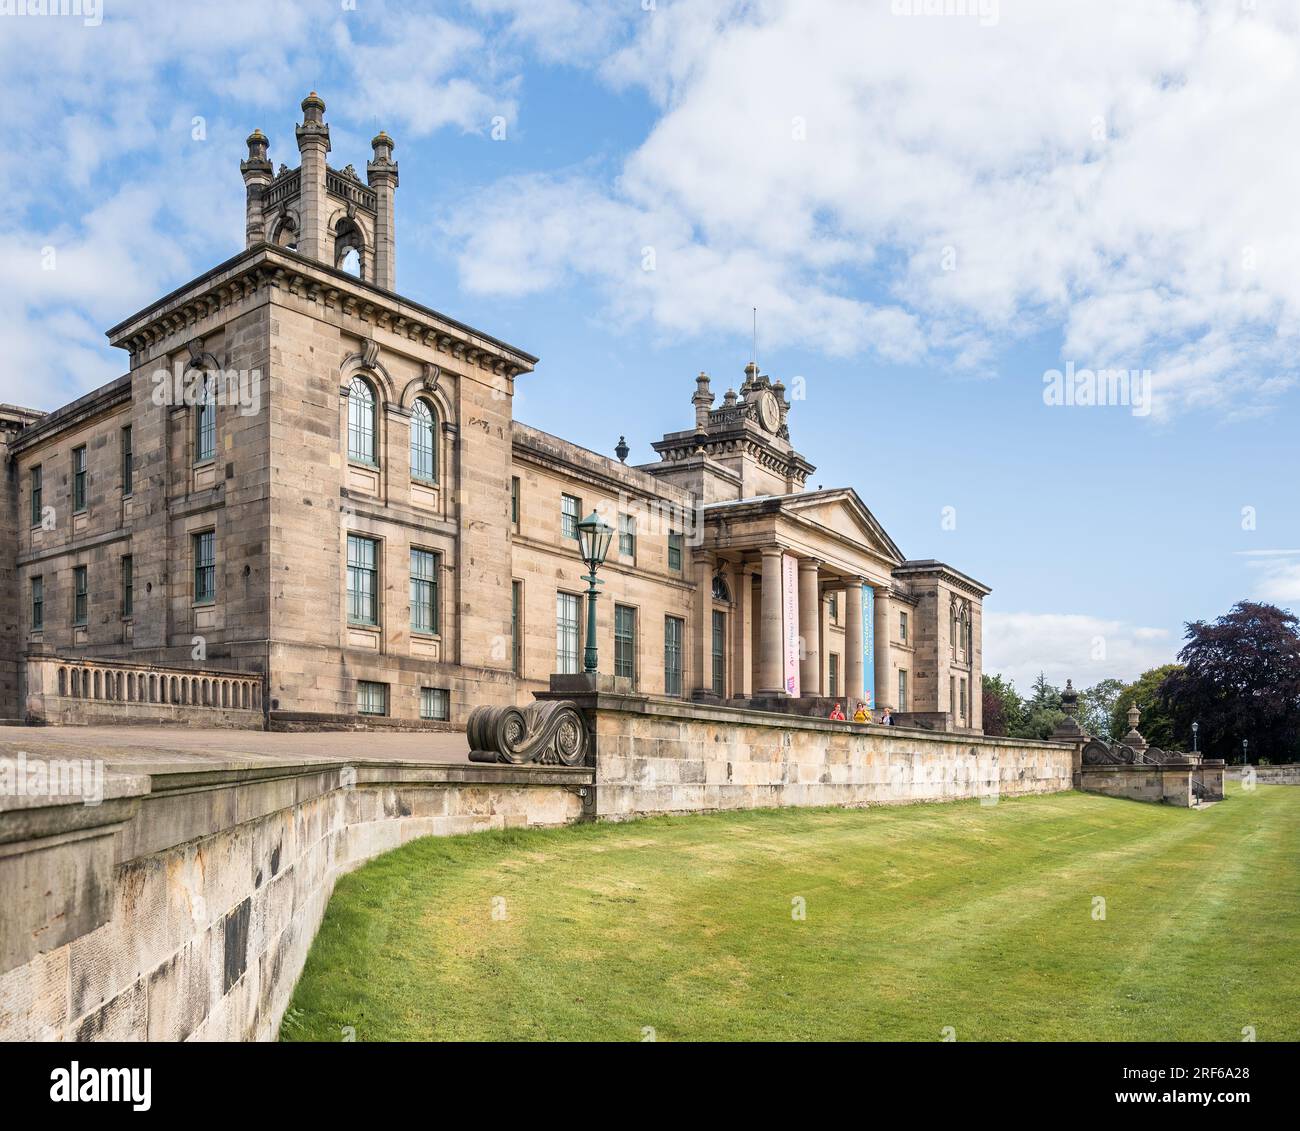 Edimburgo, Scozia, Regno Unito - Galleria d'arte Modern Two di William Burn, rinnovata da Terry Farrell & Partners Foto Stock